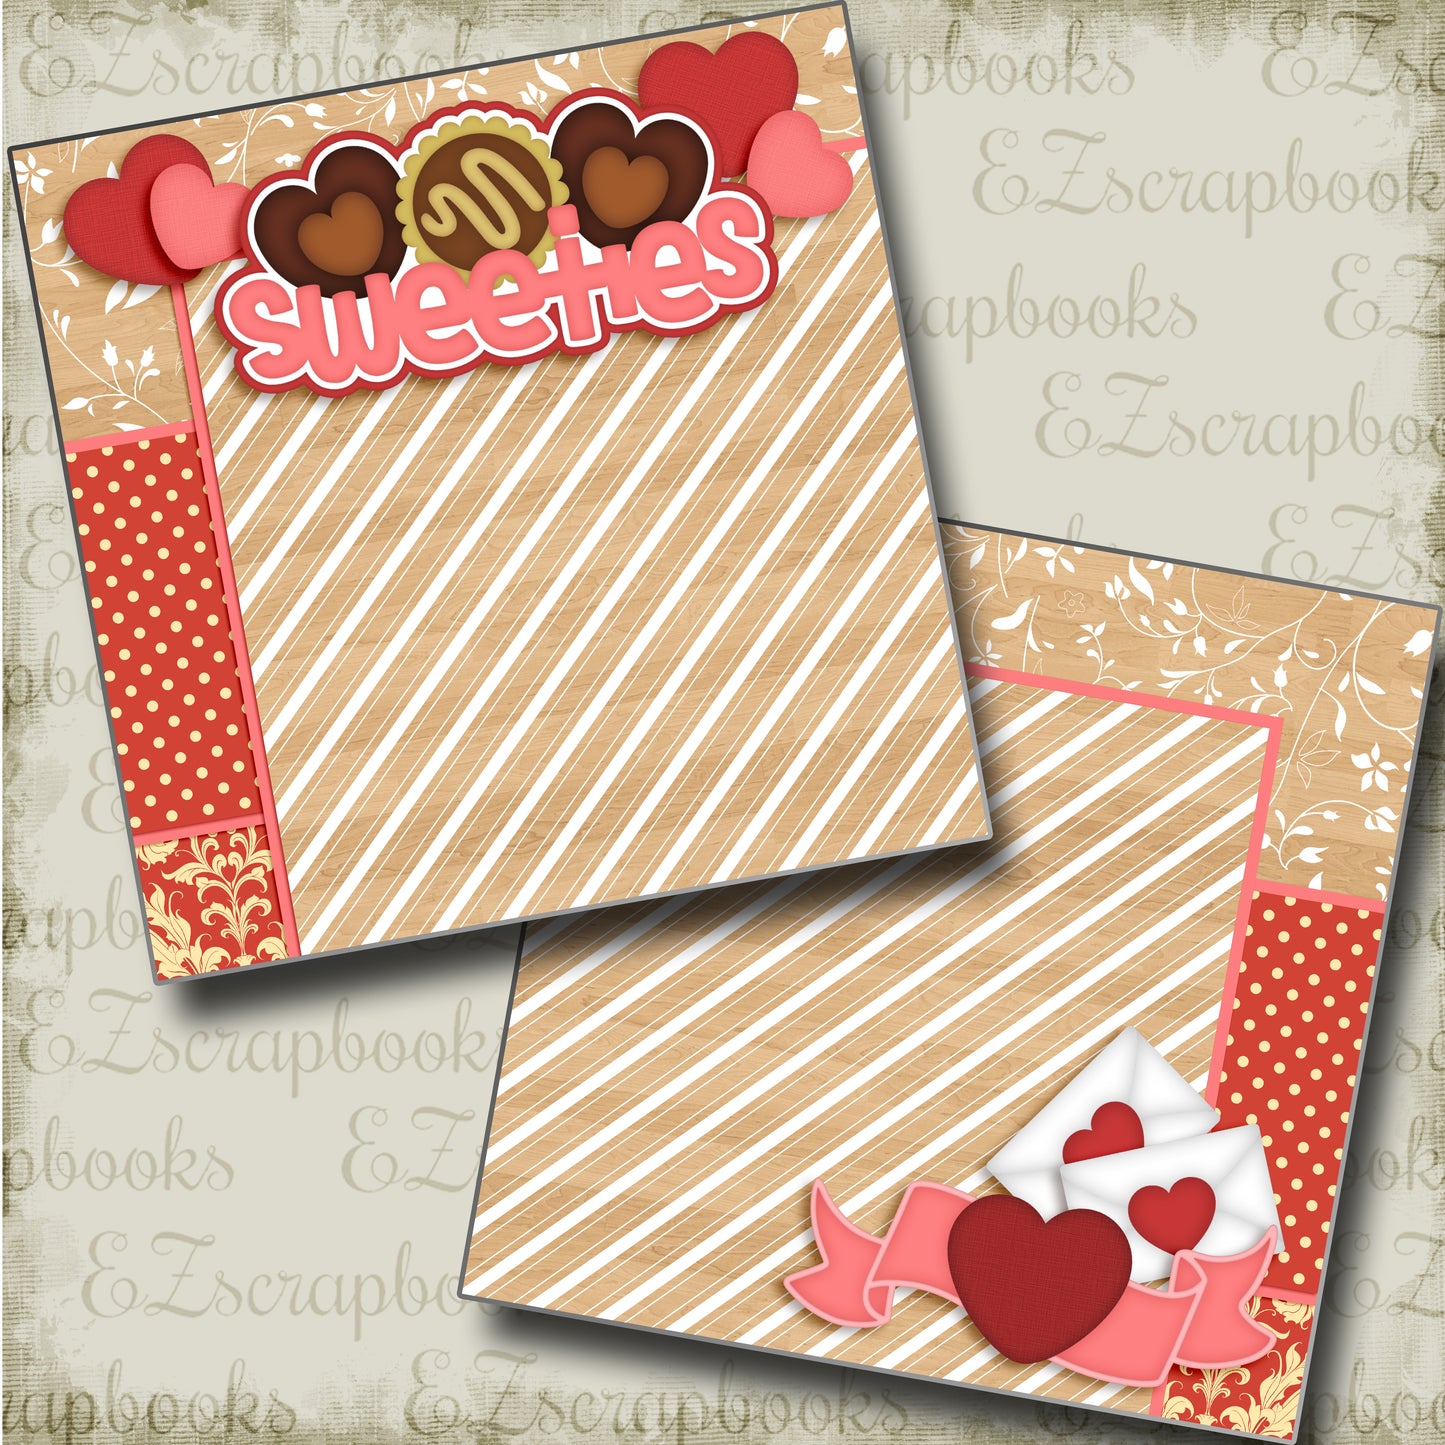 Sweeties NPM - 3767 - EZscrapbooks Scrapbook Layouts Love - Valentine